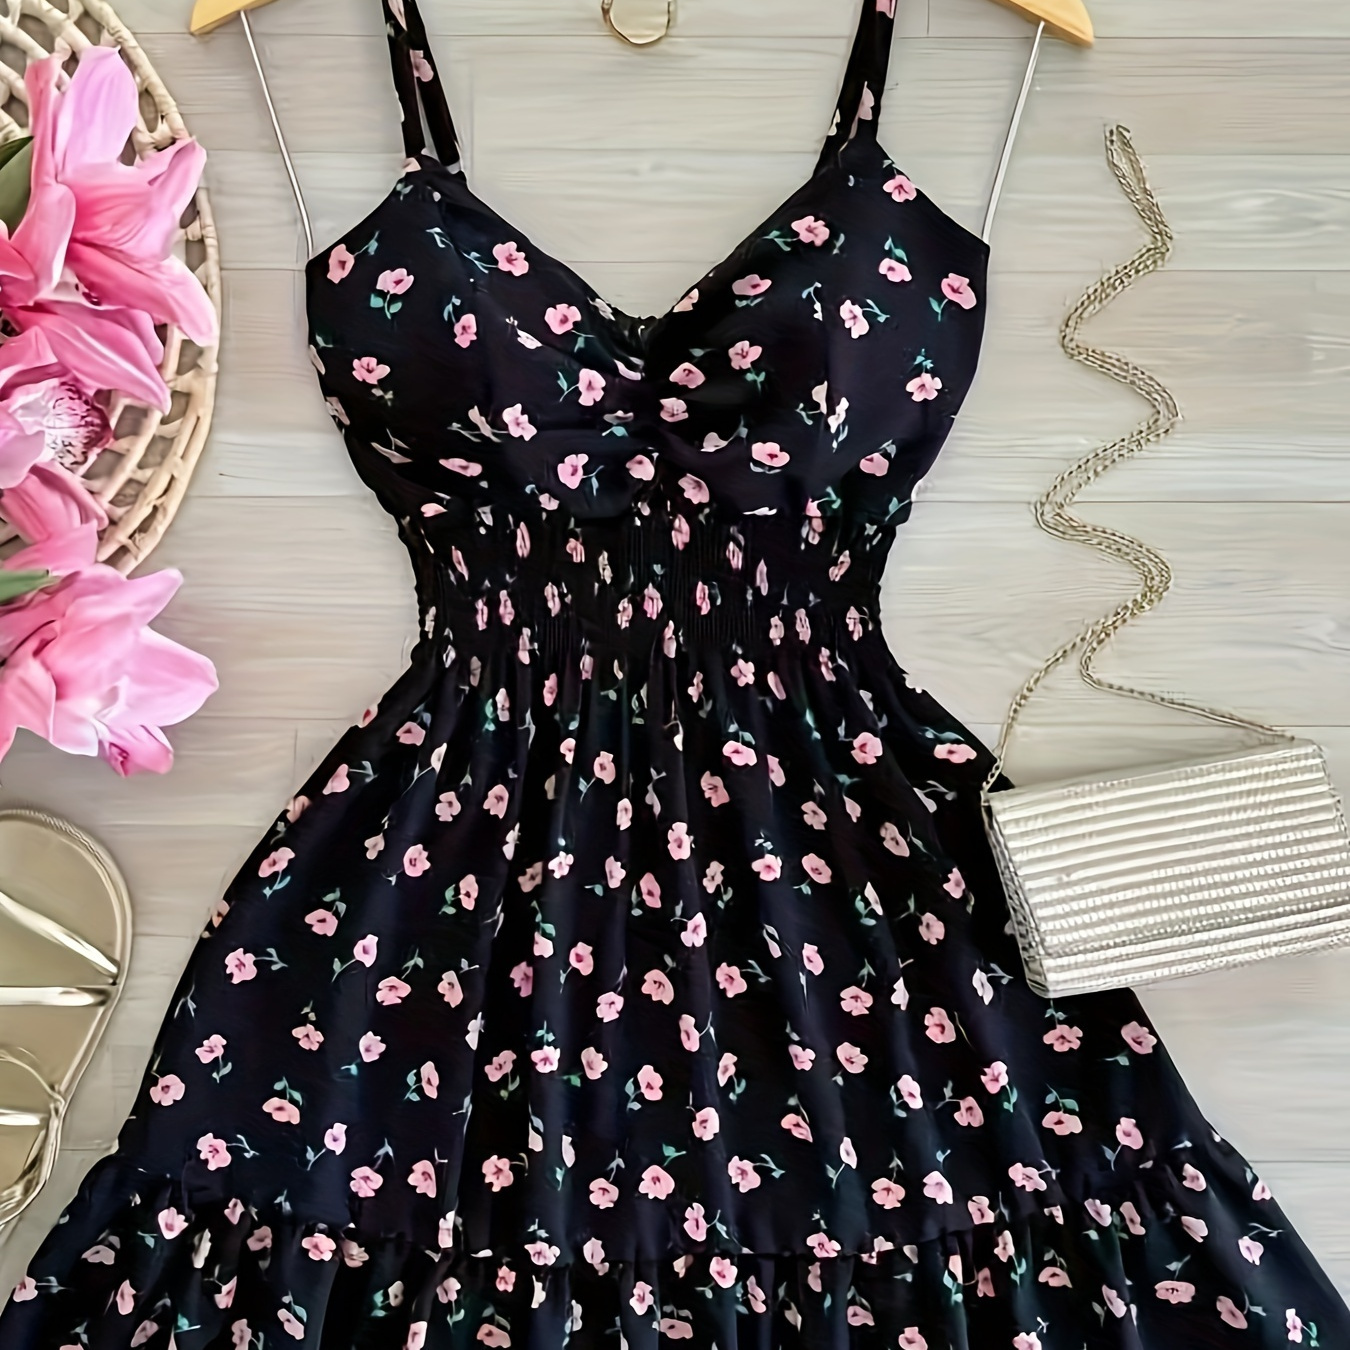 

Floral Print V Neck Cami Dress, Elegant Sleeveless Spaghetti Strap Dress For Spring & Summer, Women's Clothing